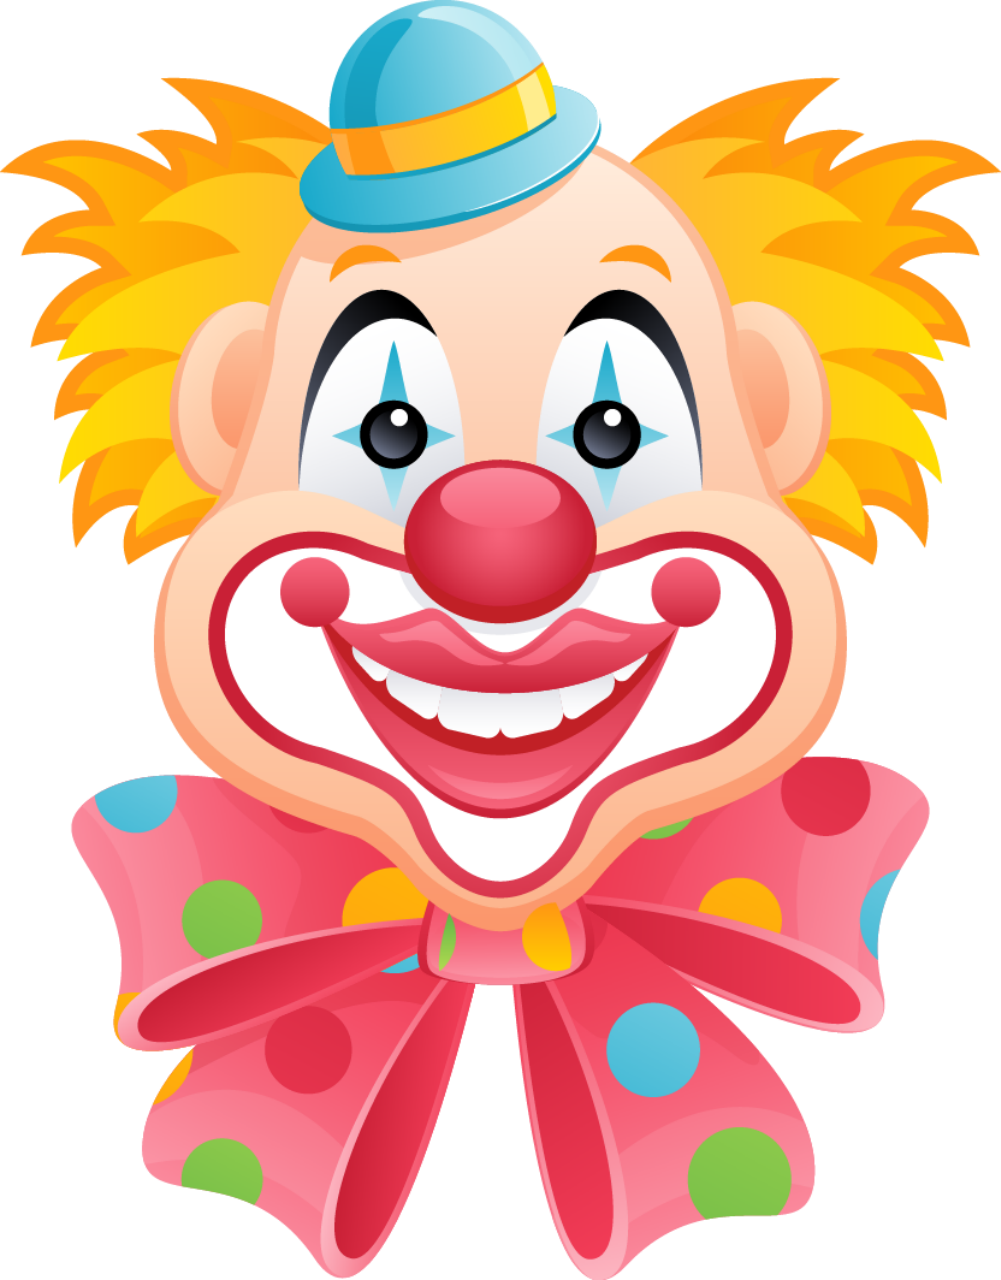 Patterns - Happy Clown Faces Clip Art (1001x1280)